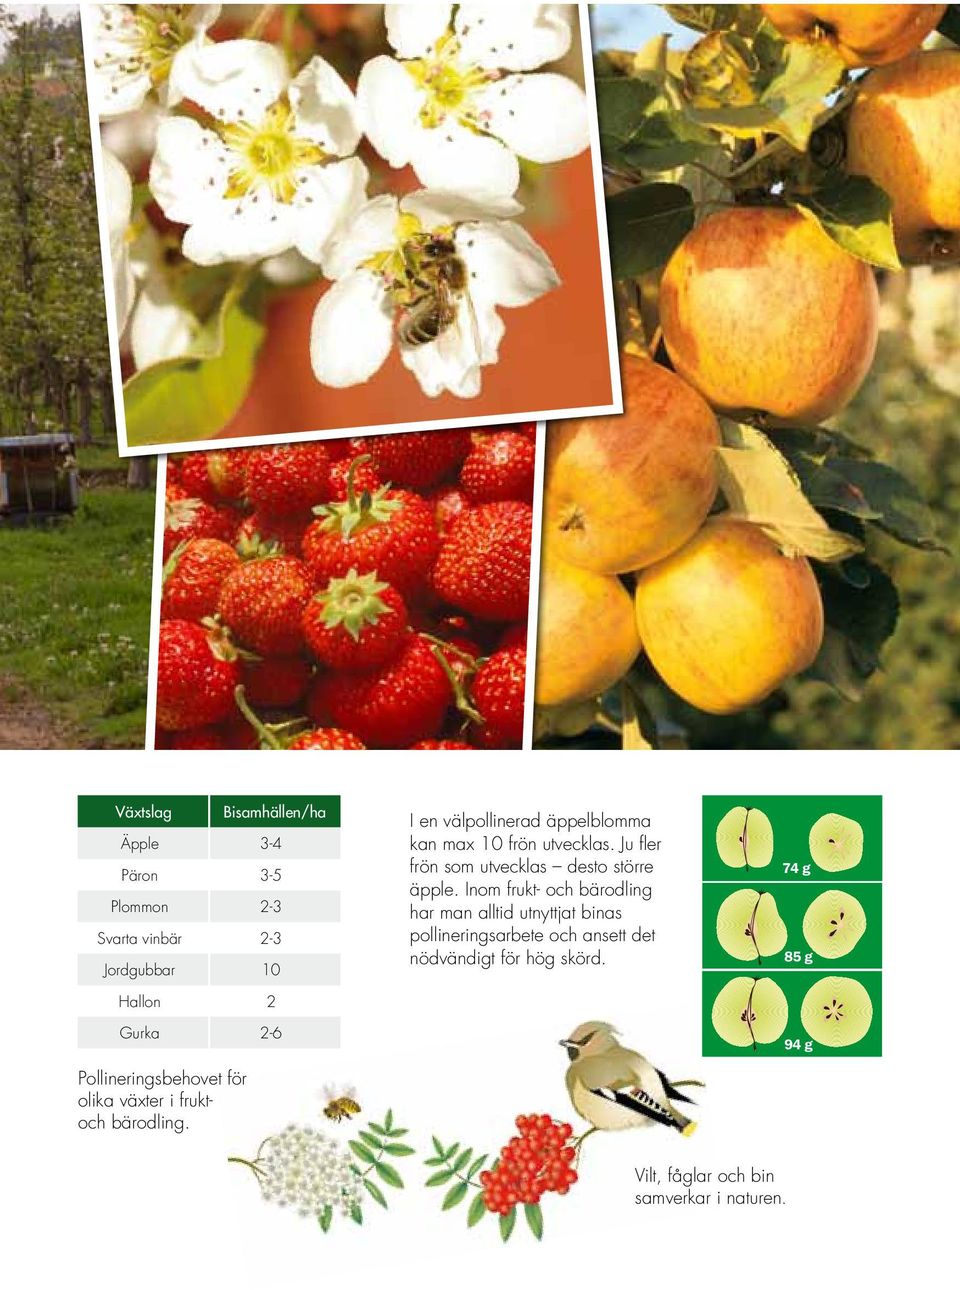 välpollinerad äppelblomma kan max 10 frön utvecklas. Ju fler frön som utvecklas desto större äpple.